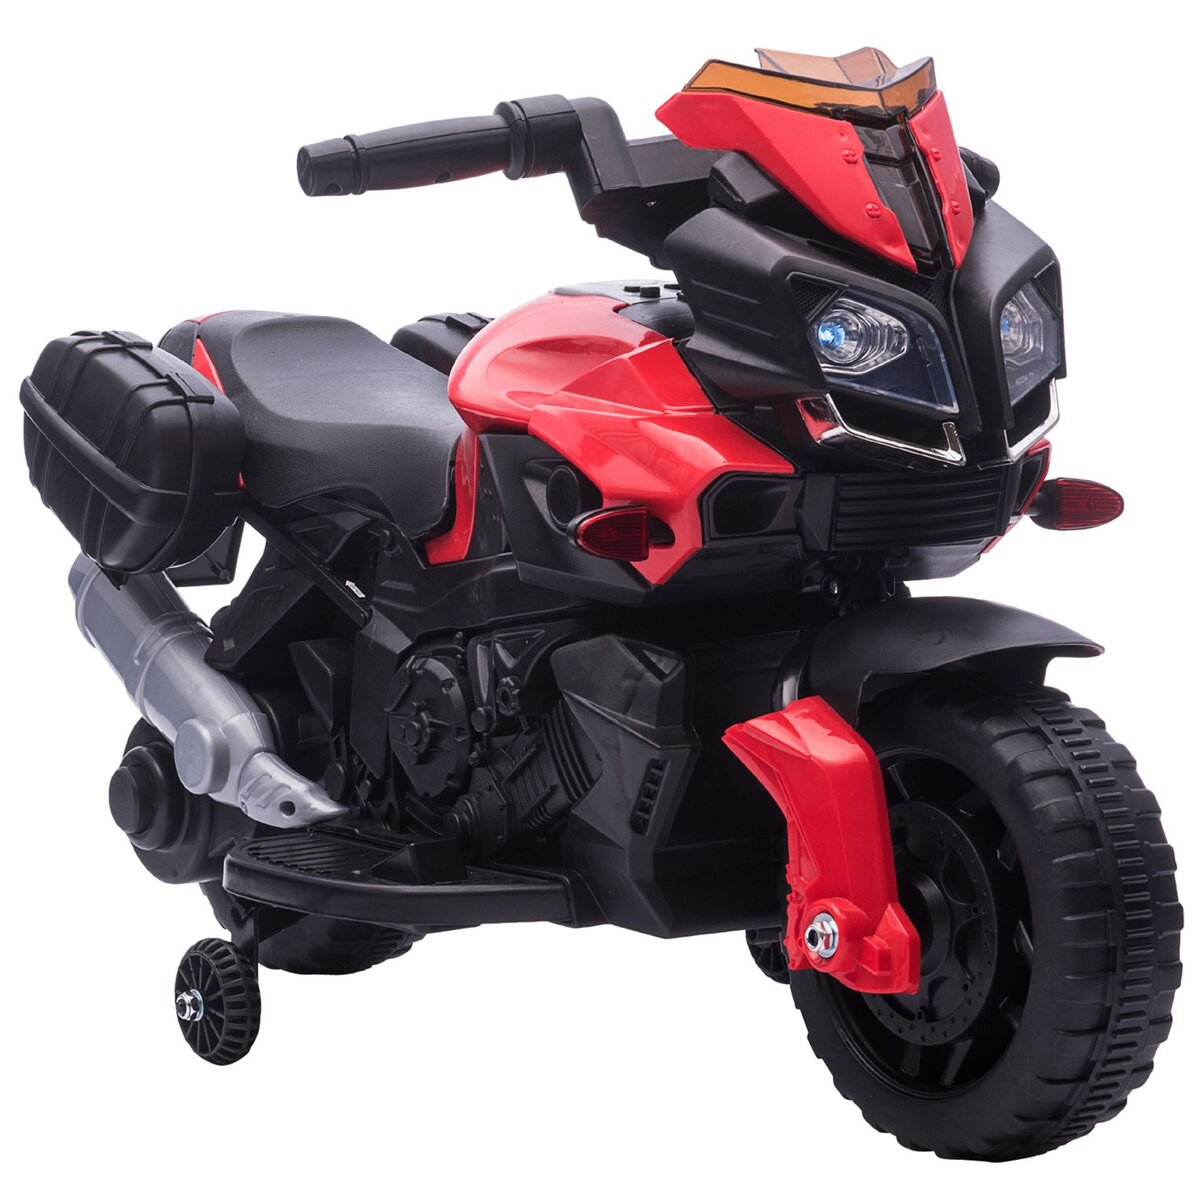 HOMCOM Moto électrique enfant 6 V 3 Km/h effet lumineux et sonore roulettes amovibles repose-pied valises latérales métal PP rouge noir